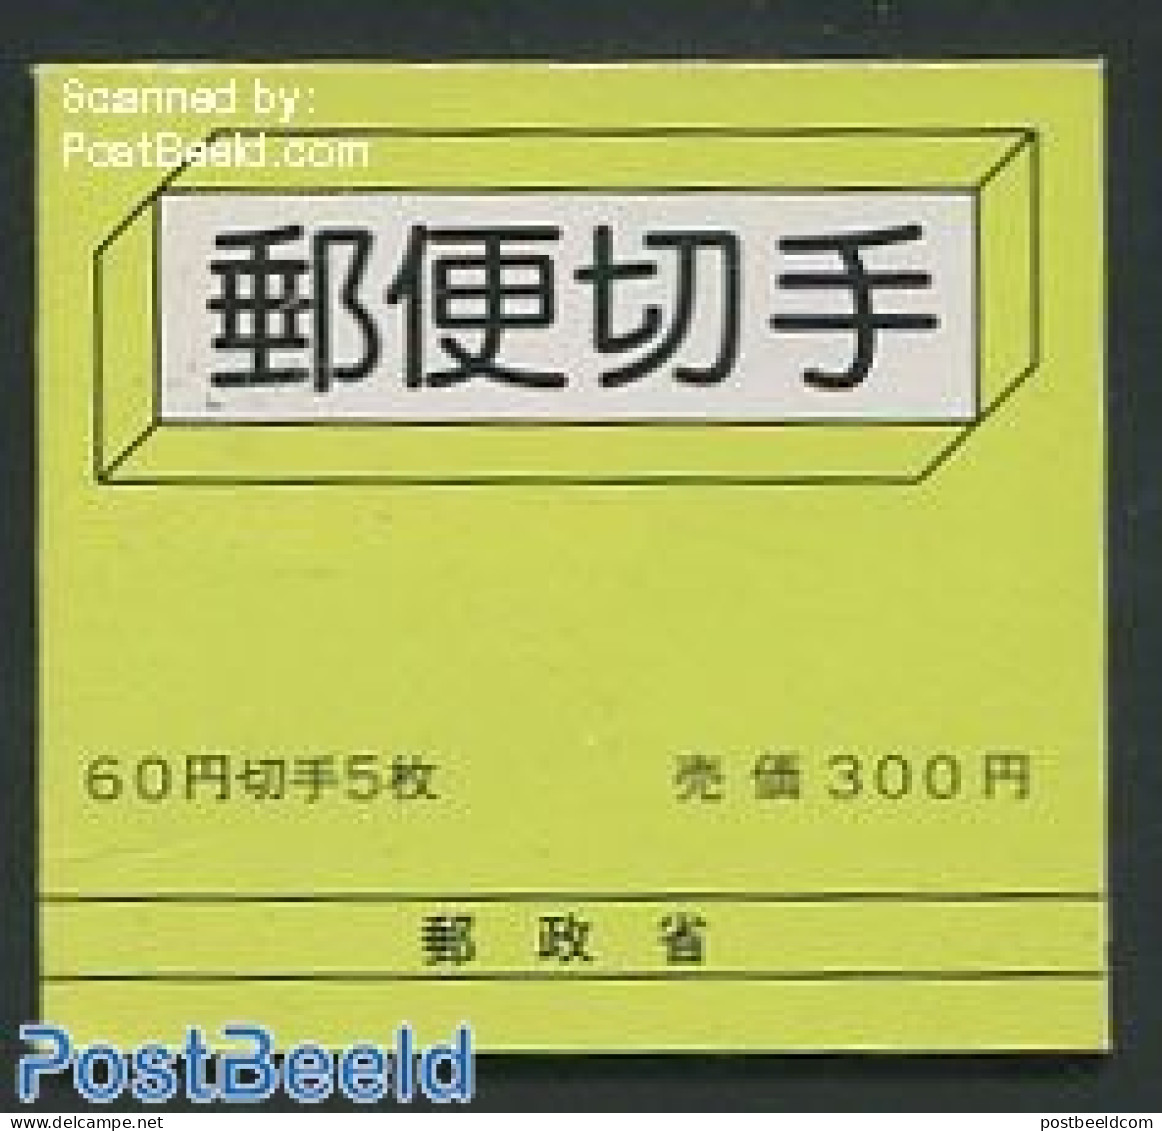 Japan 1980 Definitives Booklet, Mint NH, Stamp Booklets - Nuevos